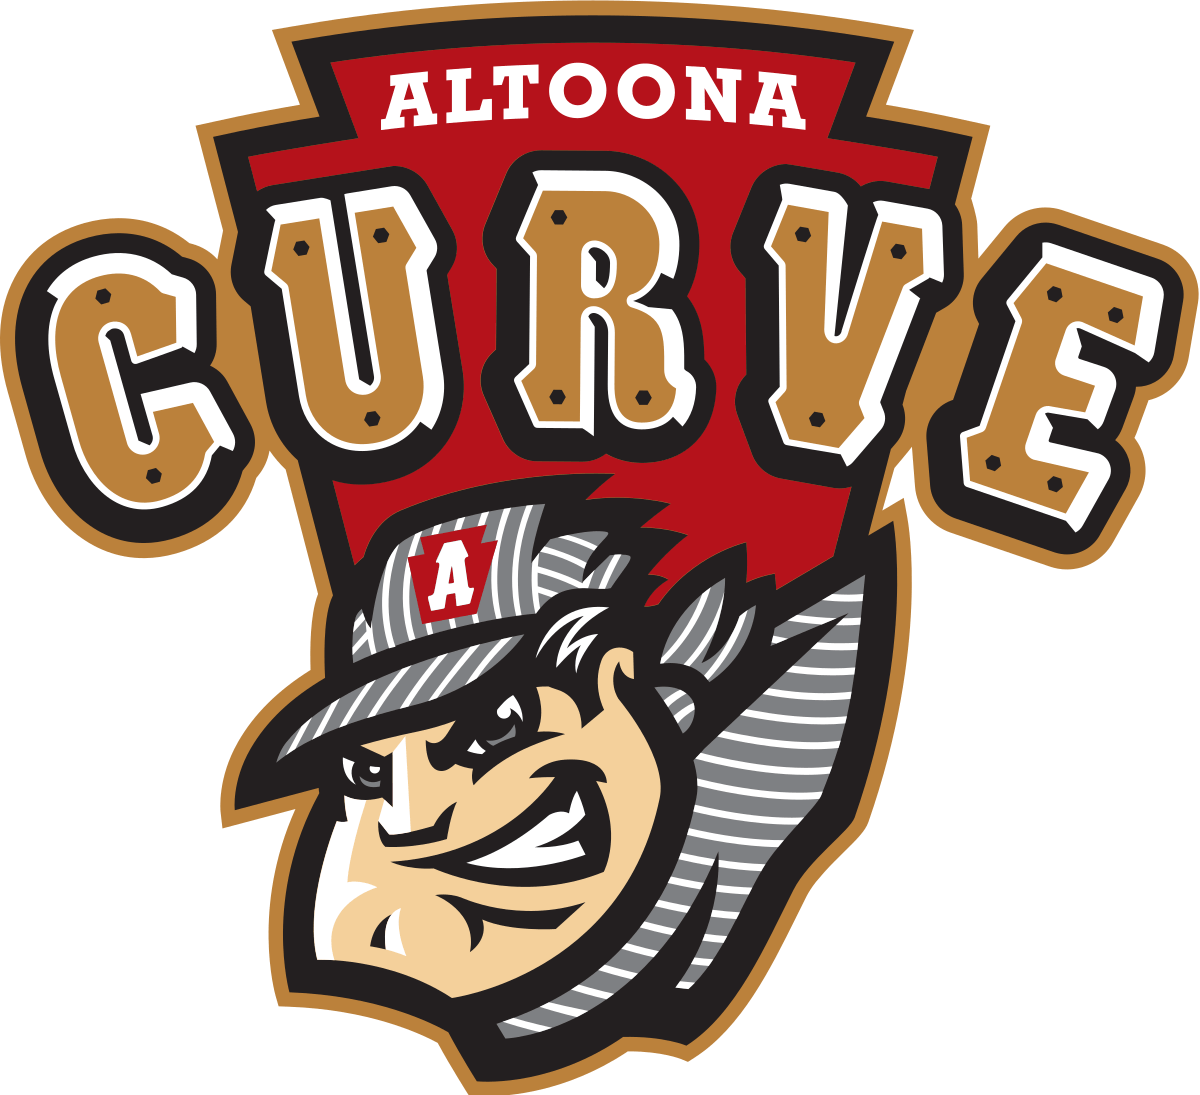 Altoona Curve logo